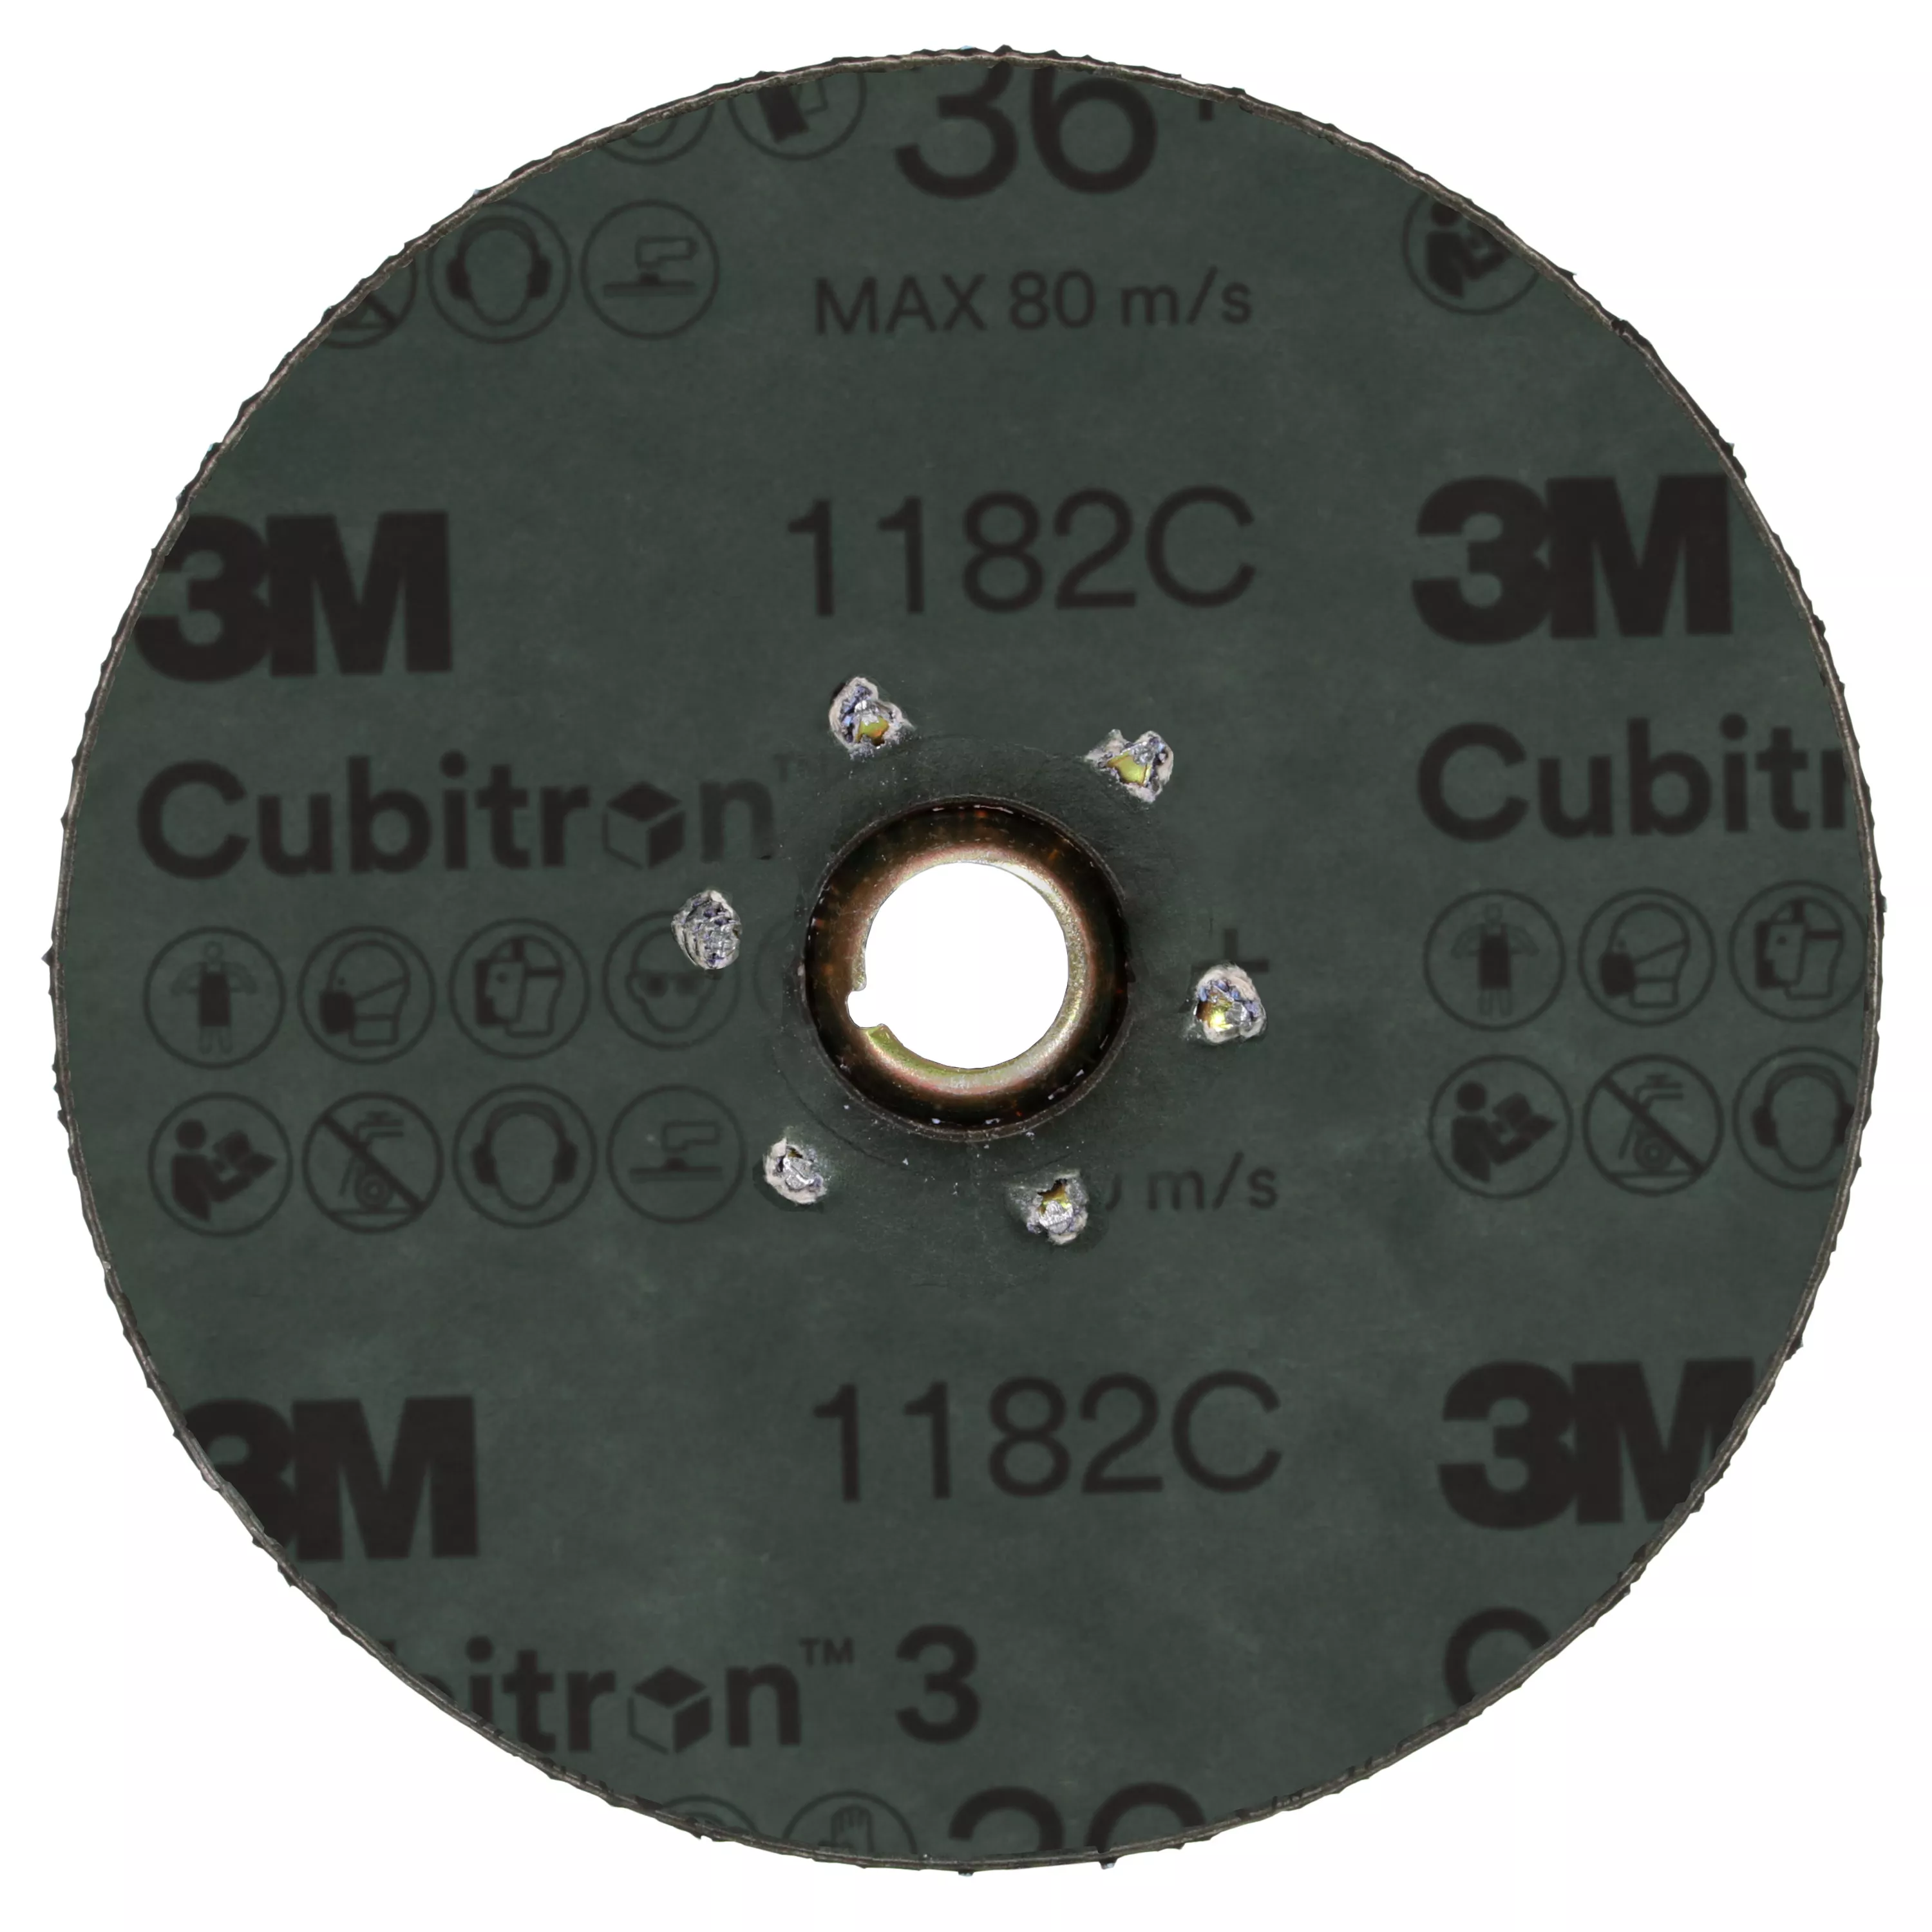 SKU 7100310728 | 3M™ Cubitron™ 3 Fibre Disc 1182C